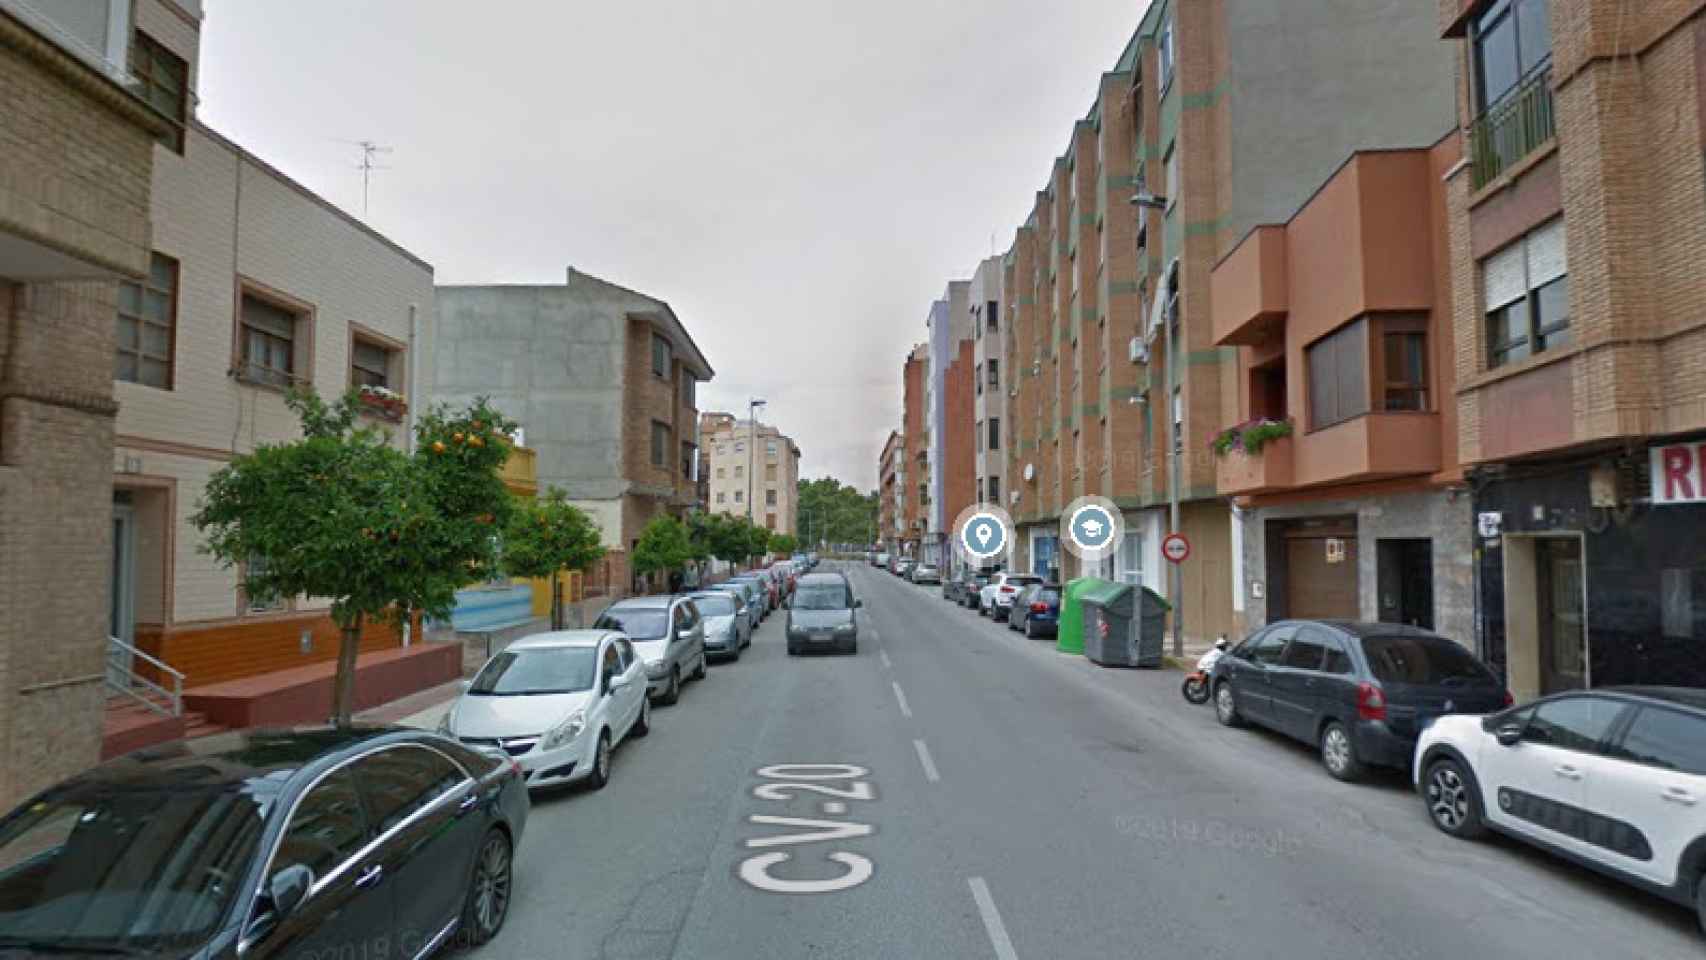 La avenida Montendre de Onda, Castellón, el lugar donde han sucedido los hechos.